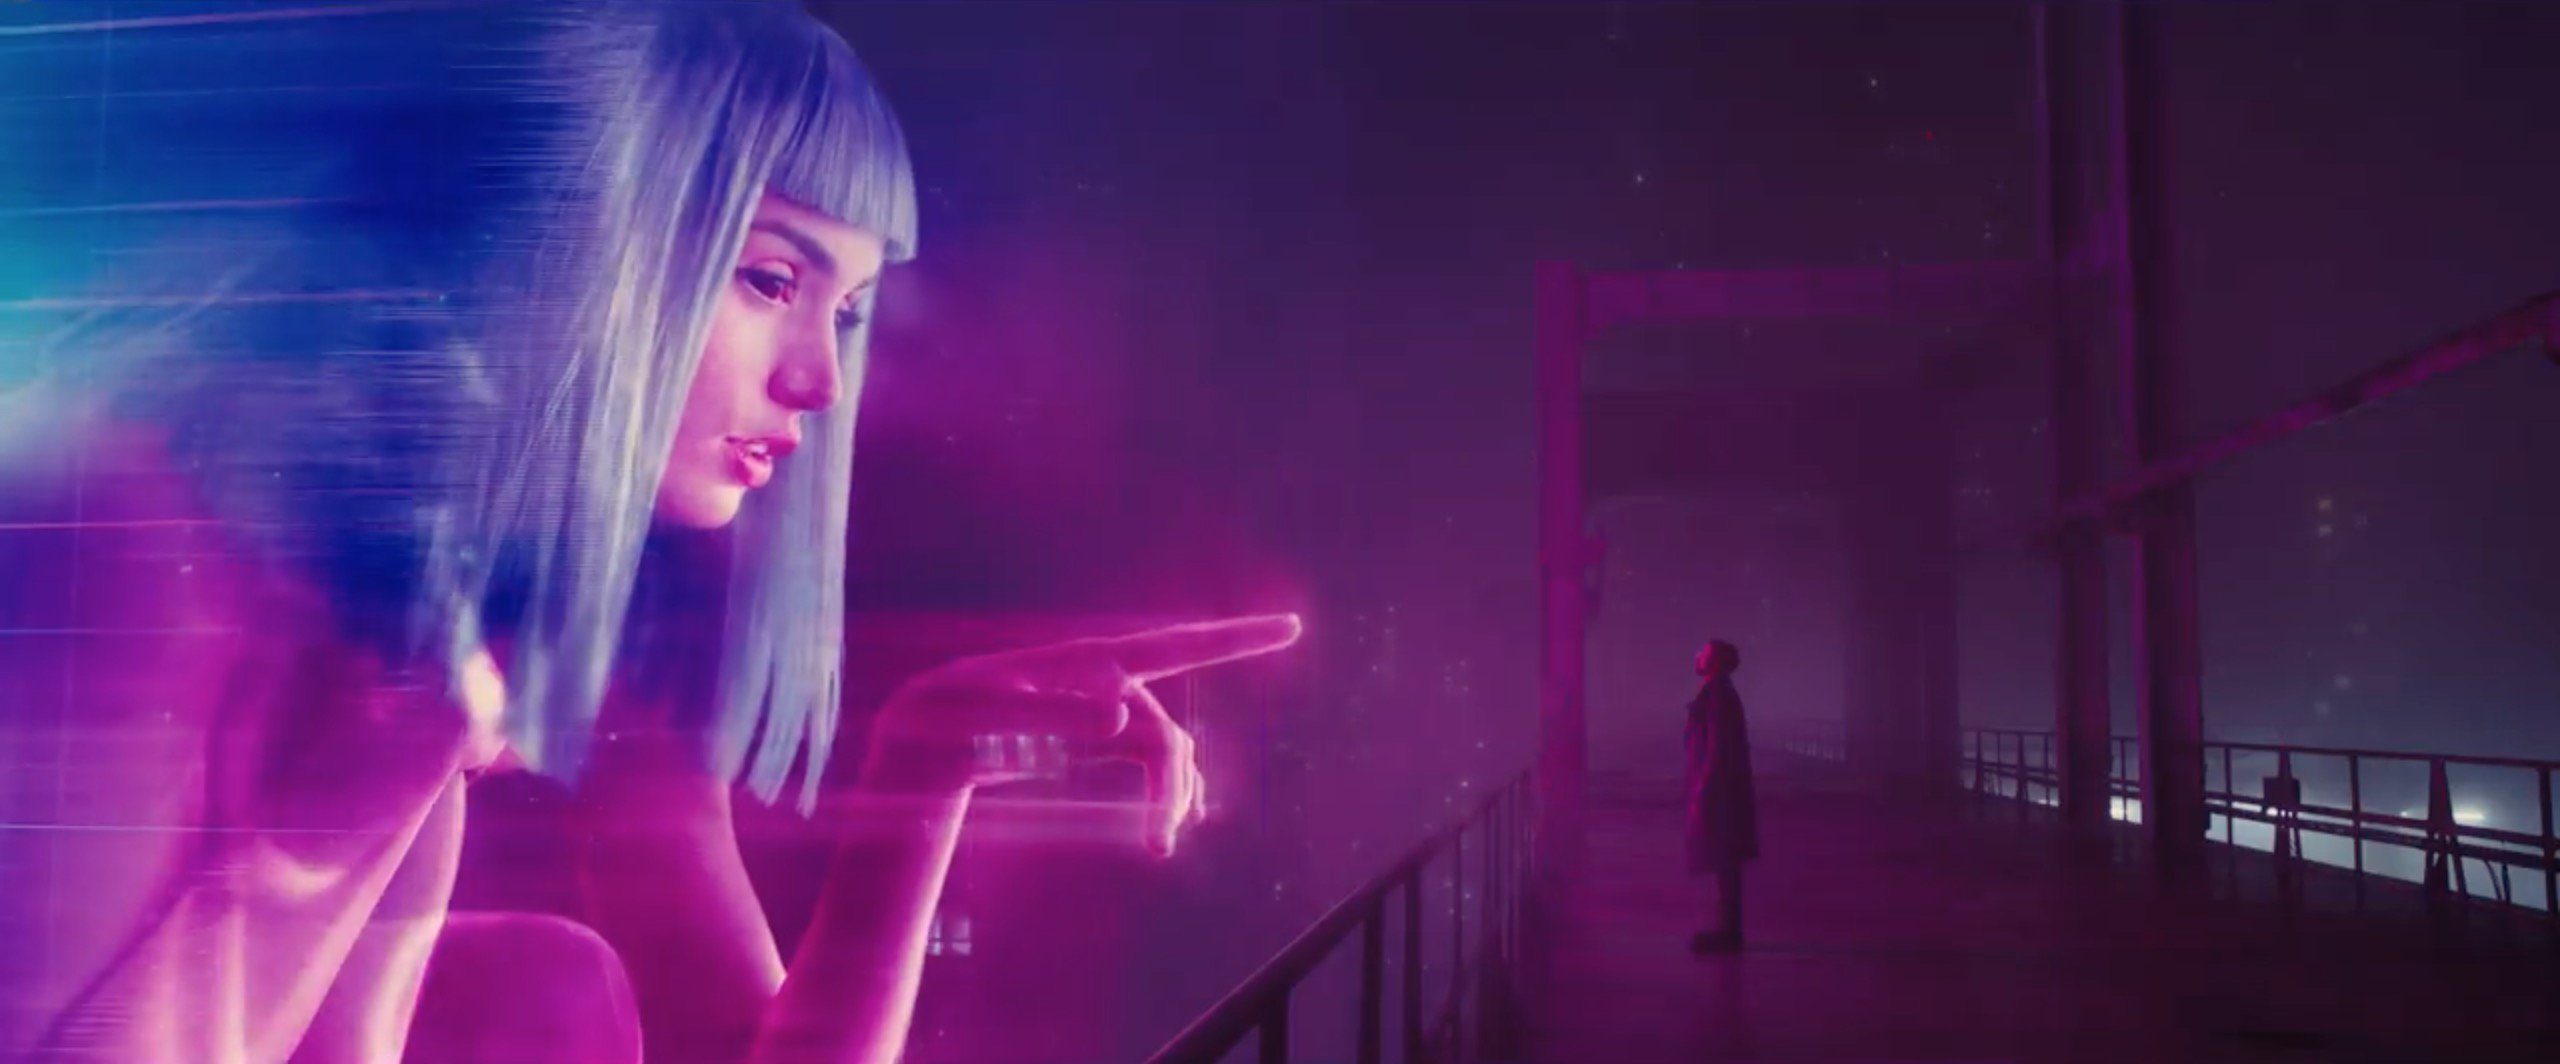 Blade Runner 2049: The Blue-Haired Girl - wide 2